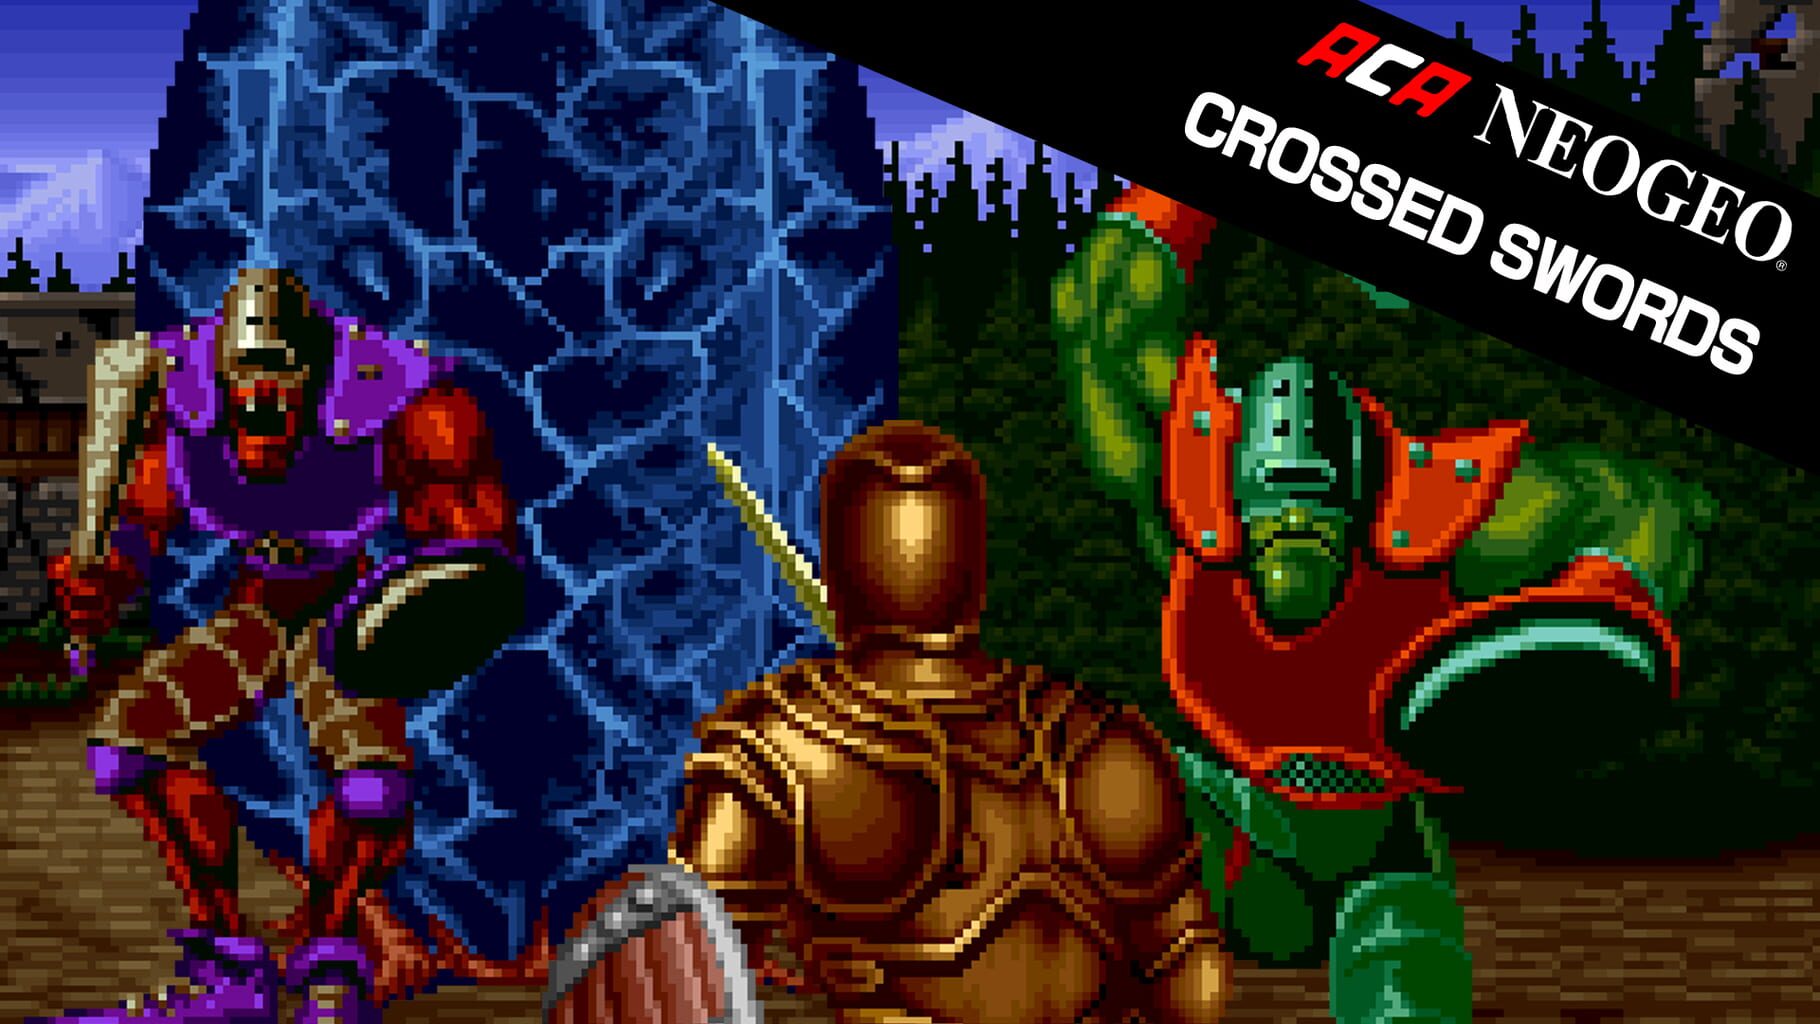 ACA Neo Geo: Crossed Swords artwork